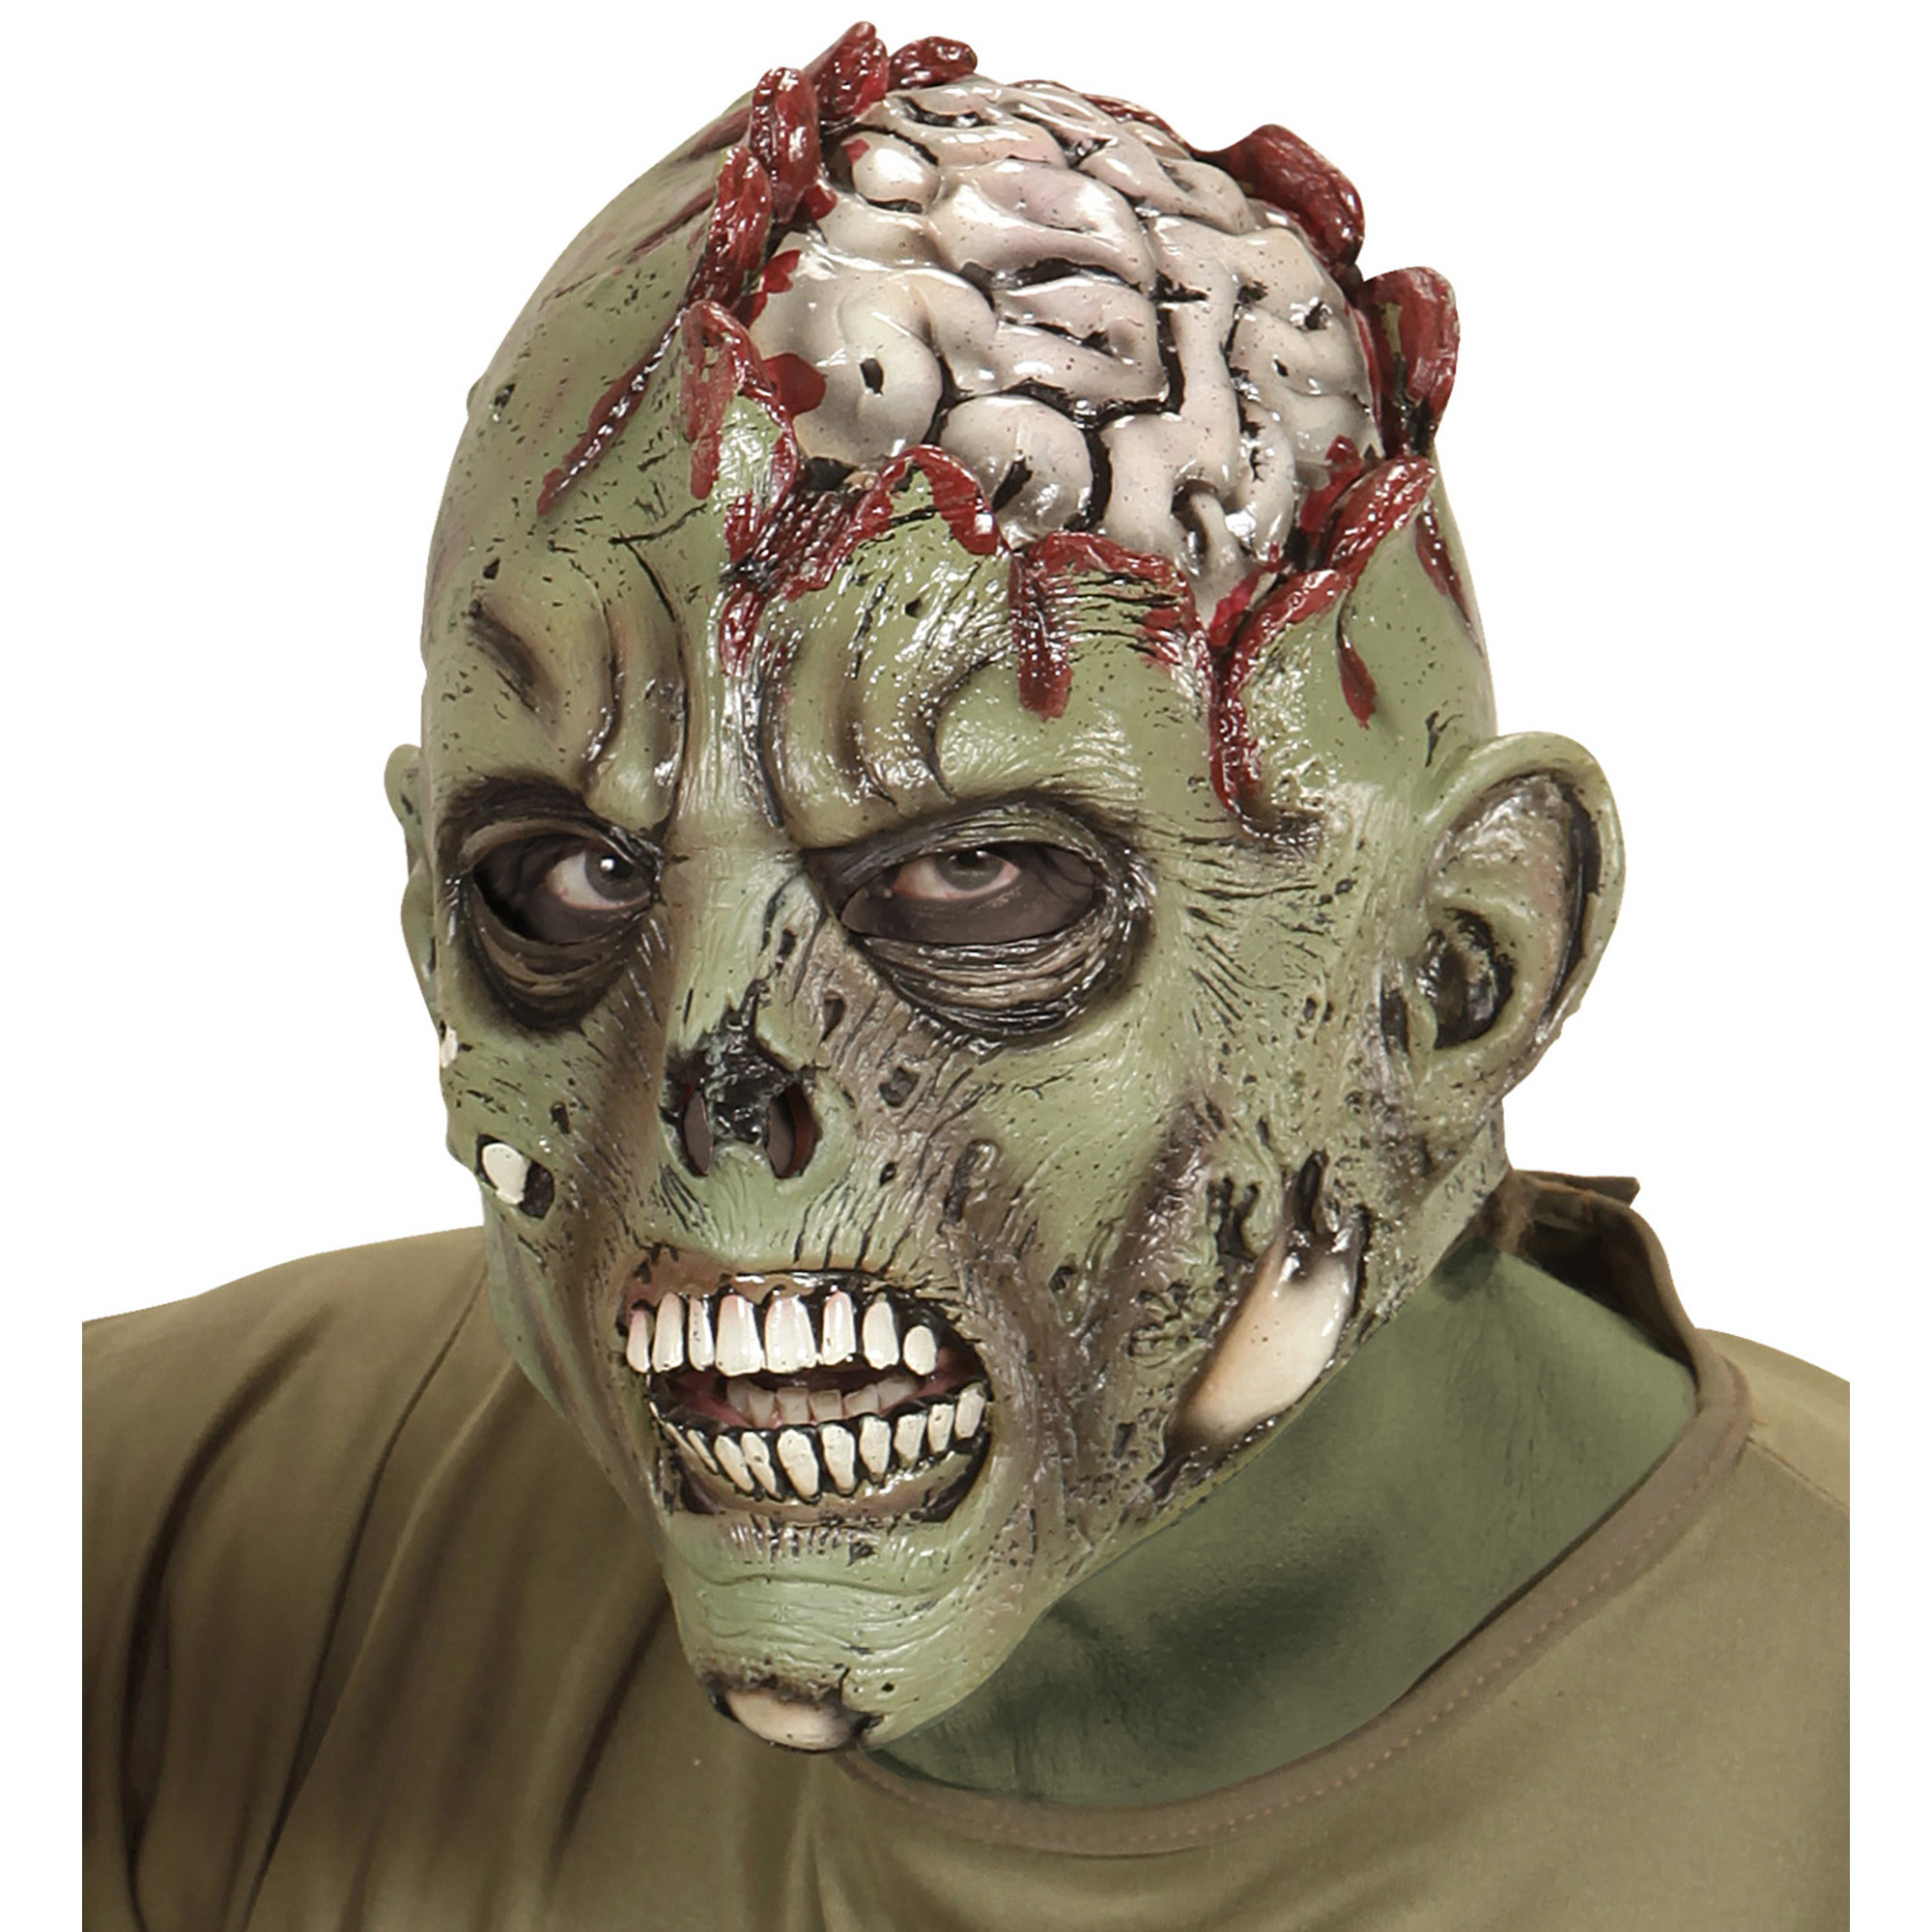 Zombiemasker open schedel met hersens eruit liggend